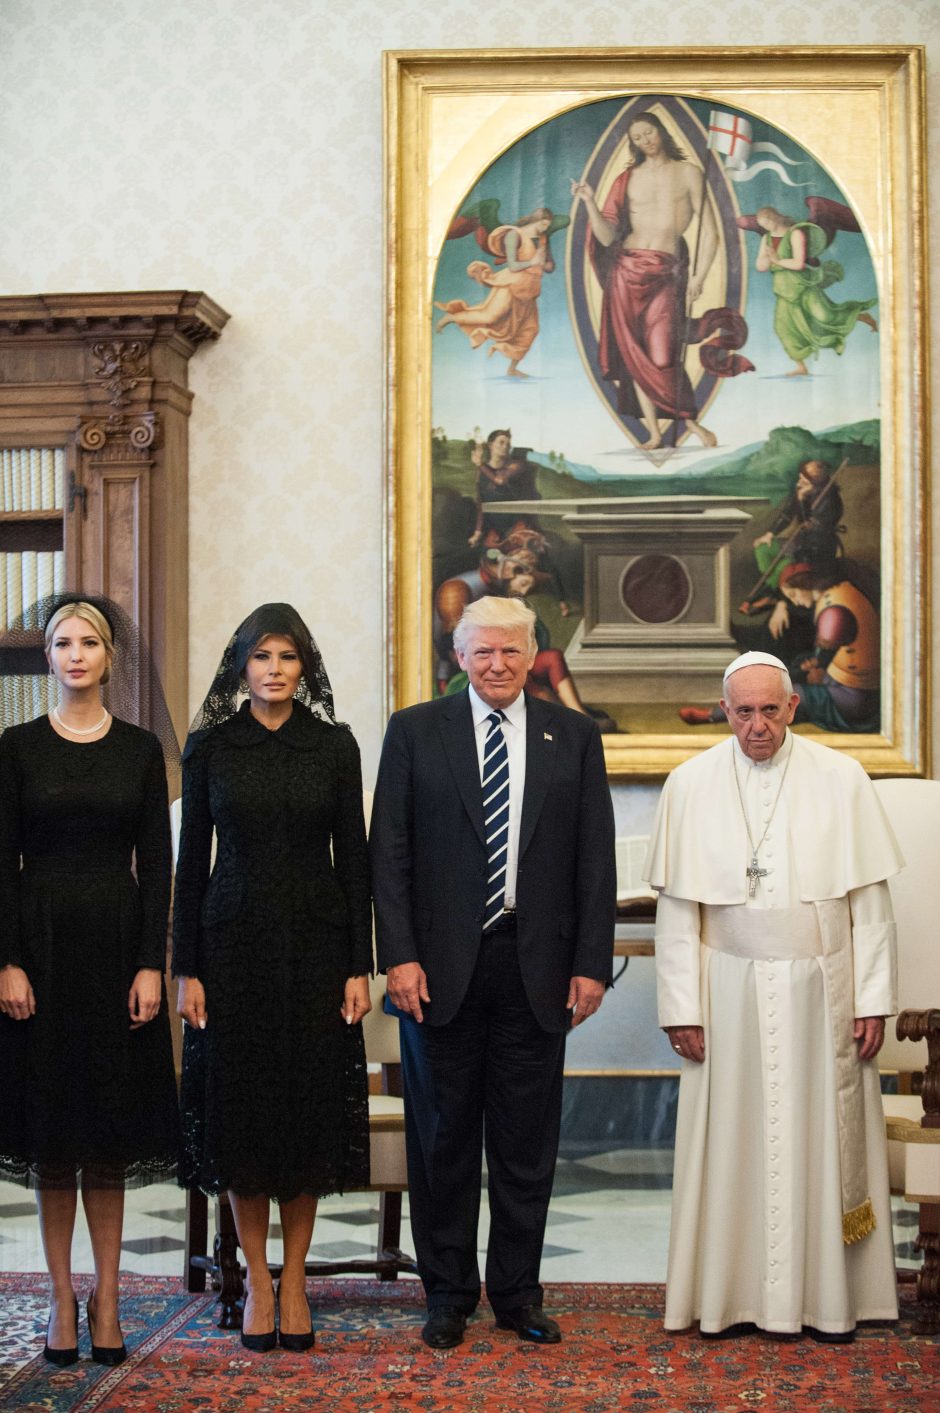 D. Trumpas įvertino popiežių Pranciškų: jis ne pėsčias